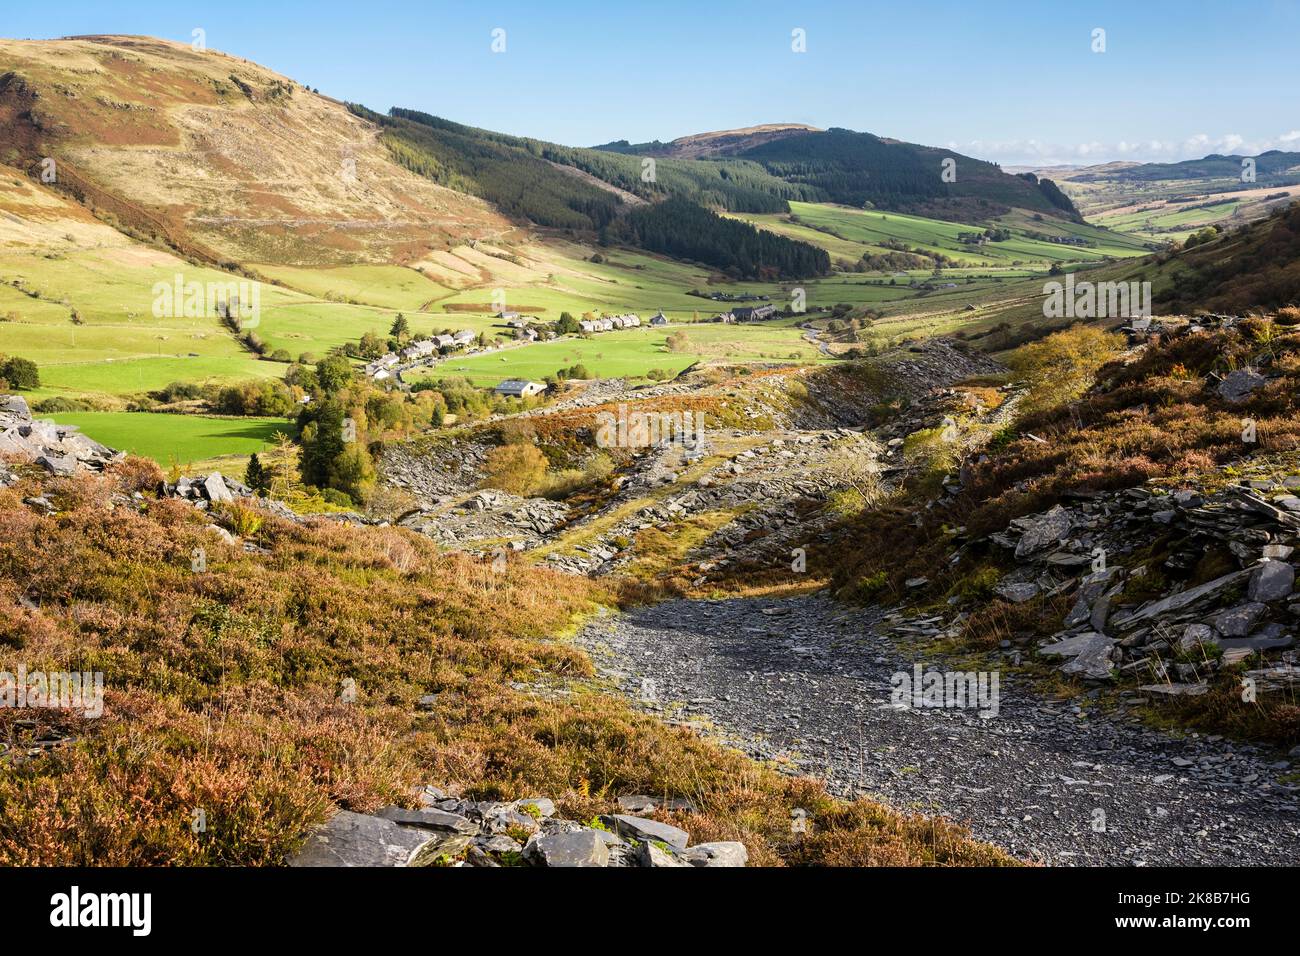 Sentier d'ardoise à travers la carrière de Rhiw Fachno au-dessus du village dans la vallée de Snowdonia. MCG Penmachno, Betws-y-Coed, Conwy, nord du pays de Galles, Royaume-Uni, Grande-Bretagne Banque D'Images